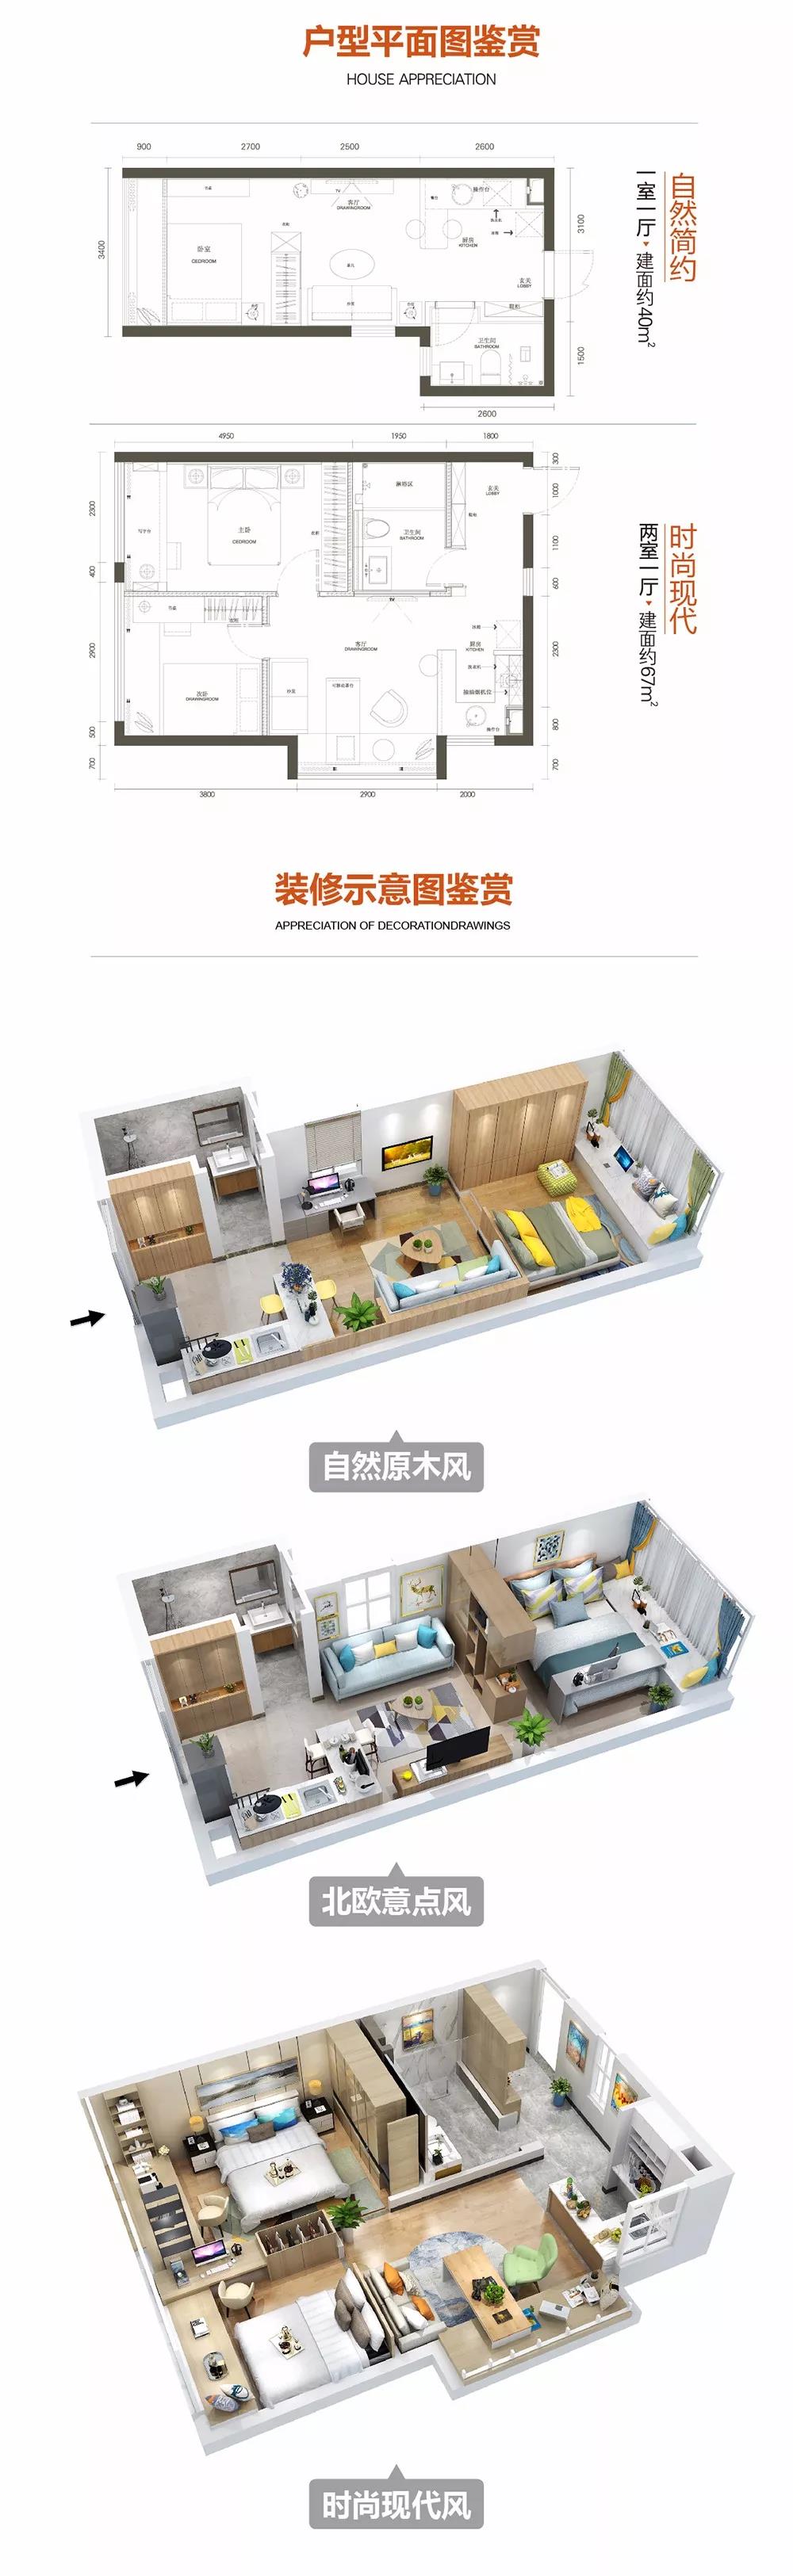 【中央大街·天誉】会赚钱的百变公寓 日供仅68元起-中国网地产